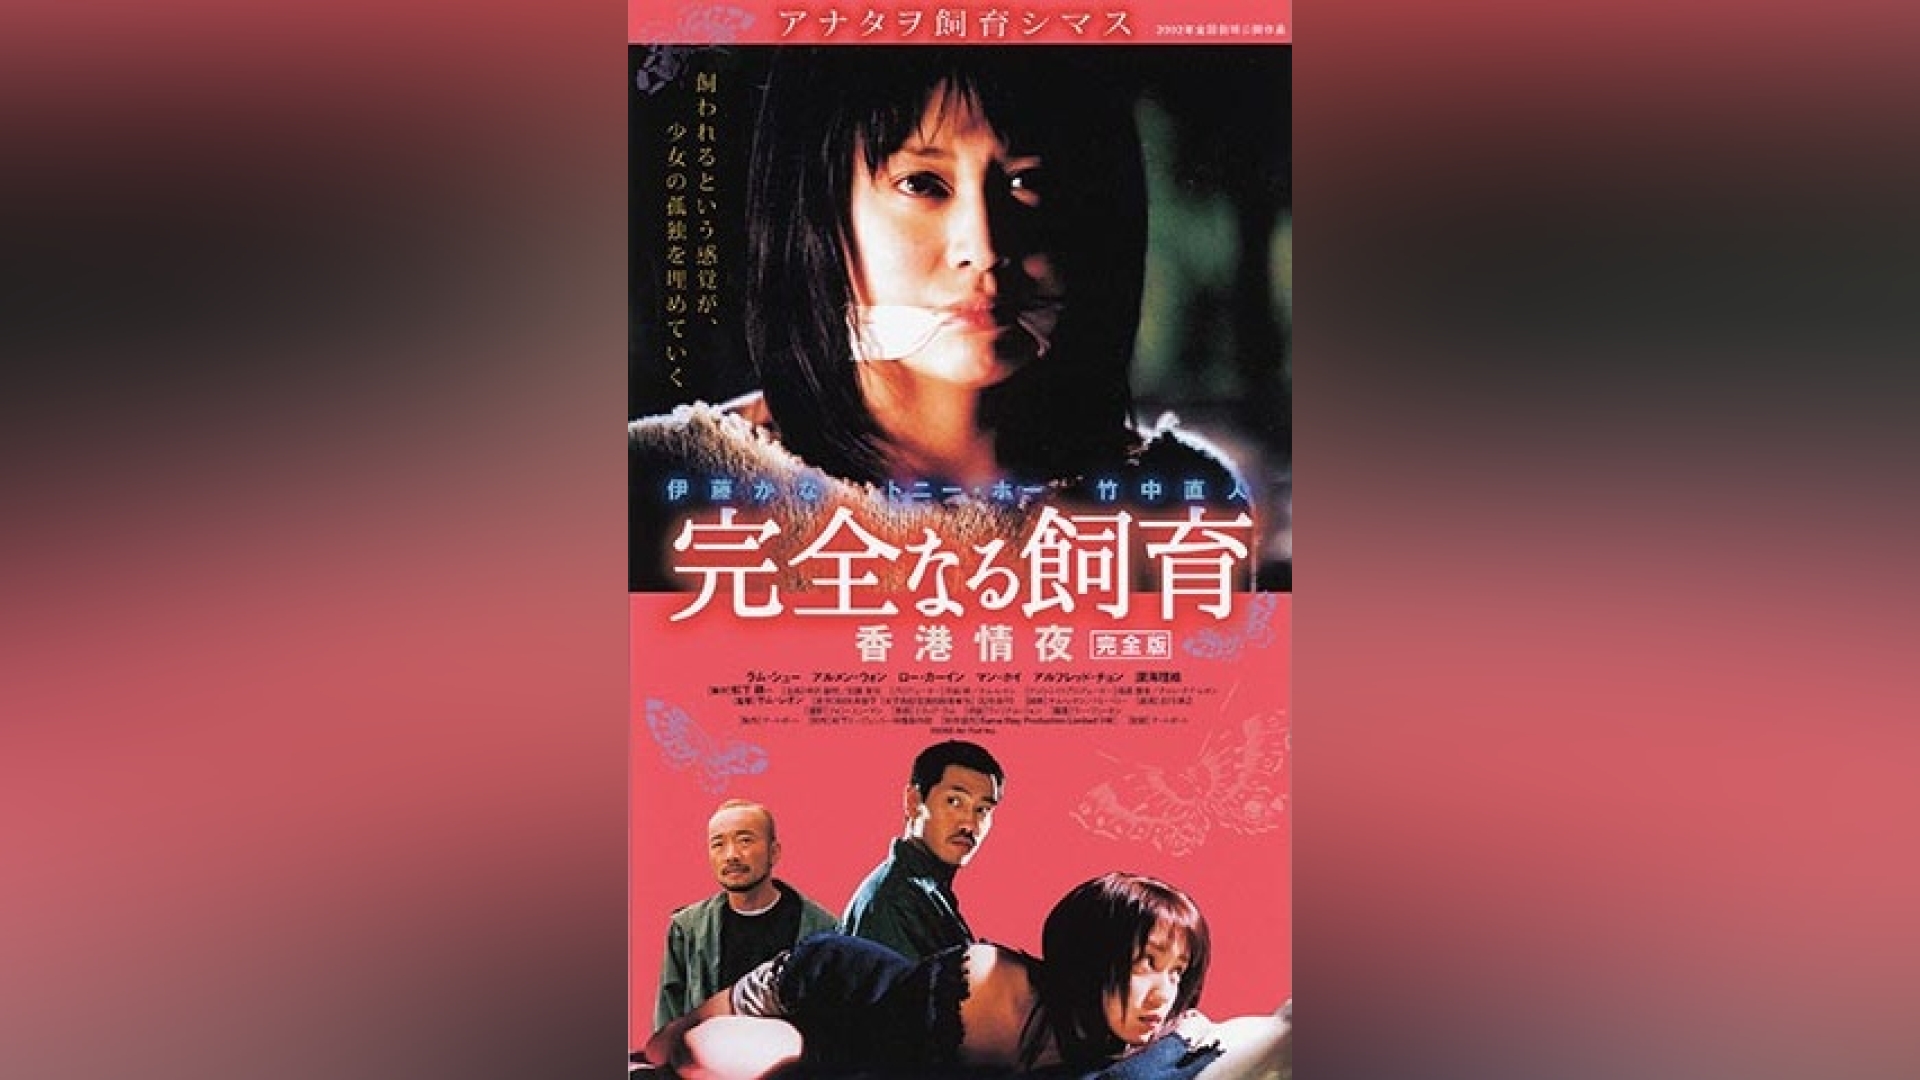 完全なる飼育 愛の40日/香港情夜 セット - DVD/ブルーレイ